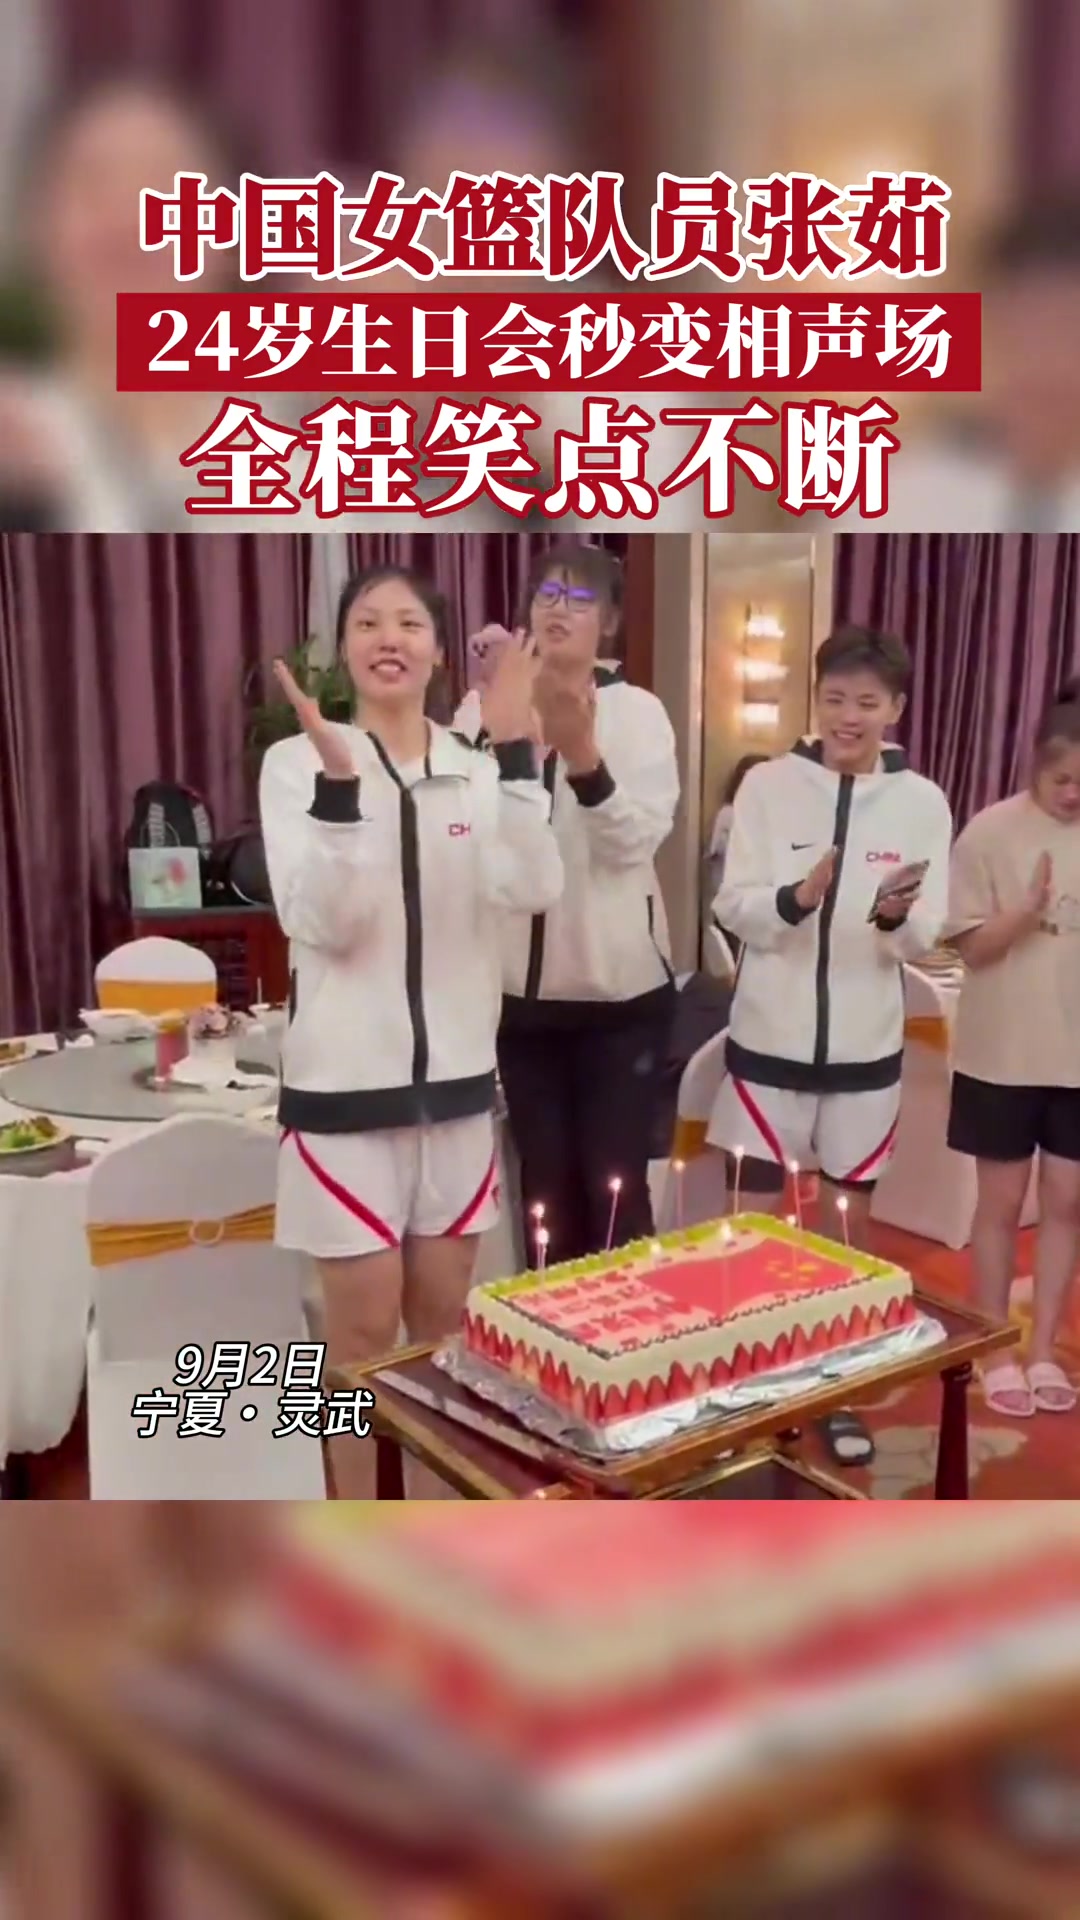 中国女篮庆祝队员张茹24岁生日 生日会变春节晚会